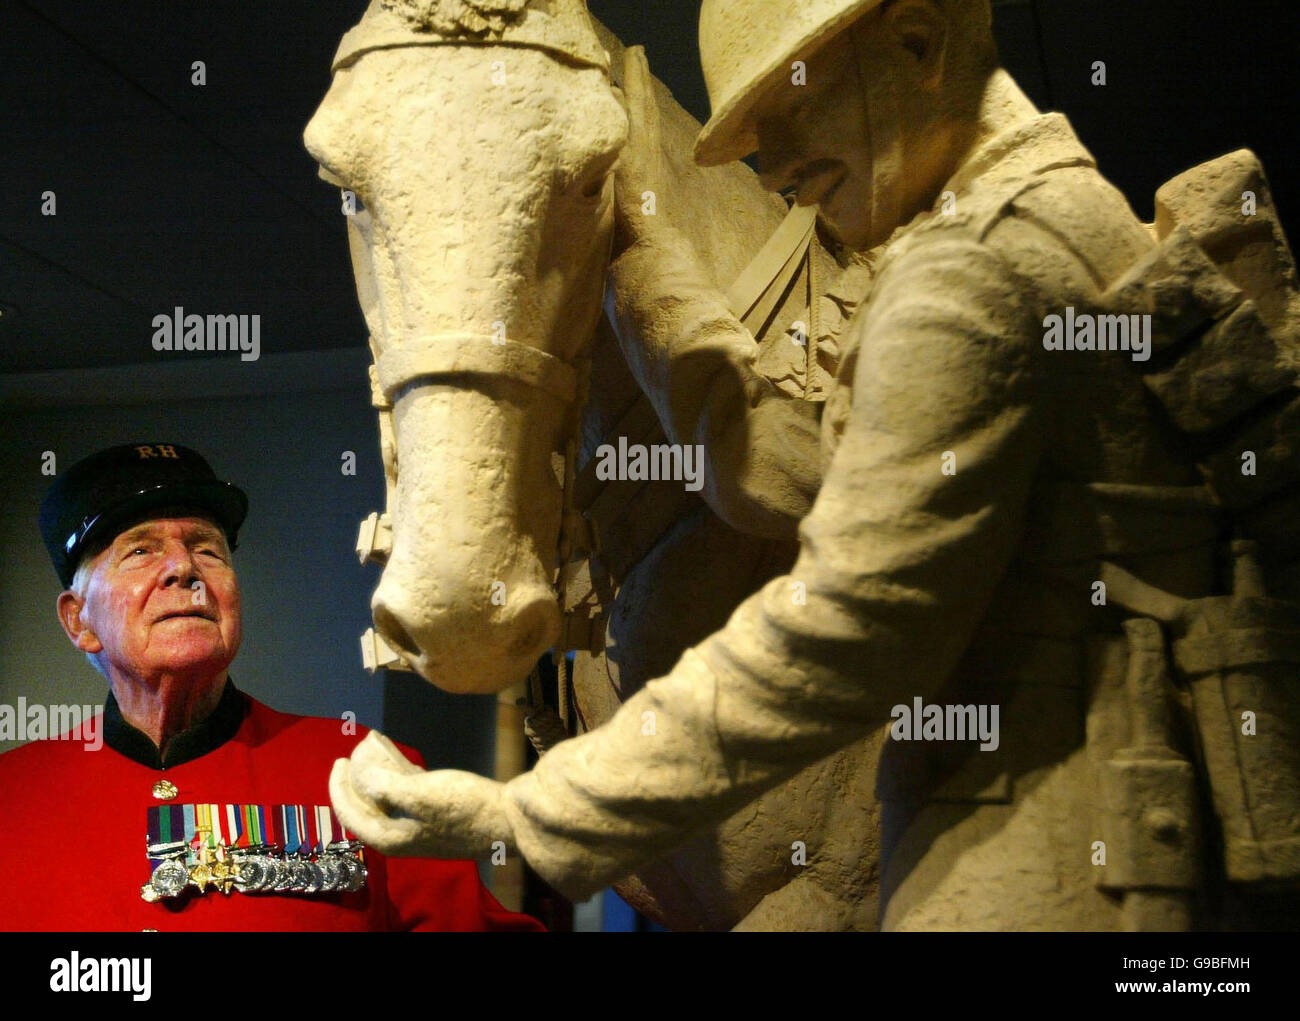 Der Chelsea-Rentner Bill Cross, 89, sieht eine Statue eines Kavalleristen, die Teil einer neuen Ausstellung über 300 Jahre schottische Militärgeschichte im Edinburgh Castle ist. Stockfoto